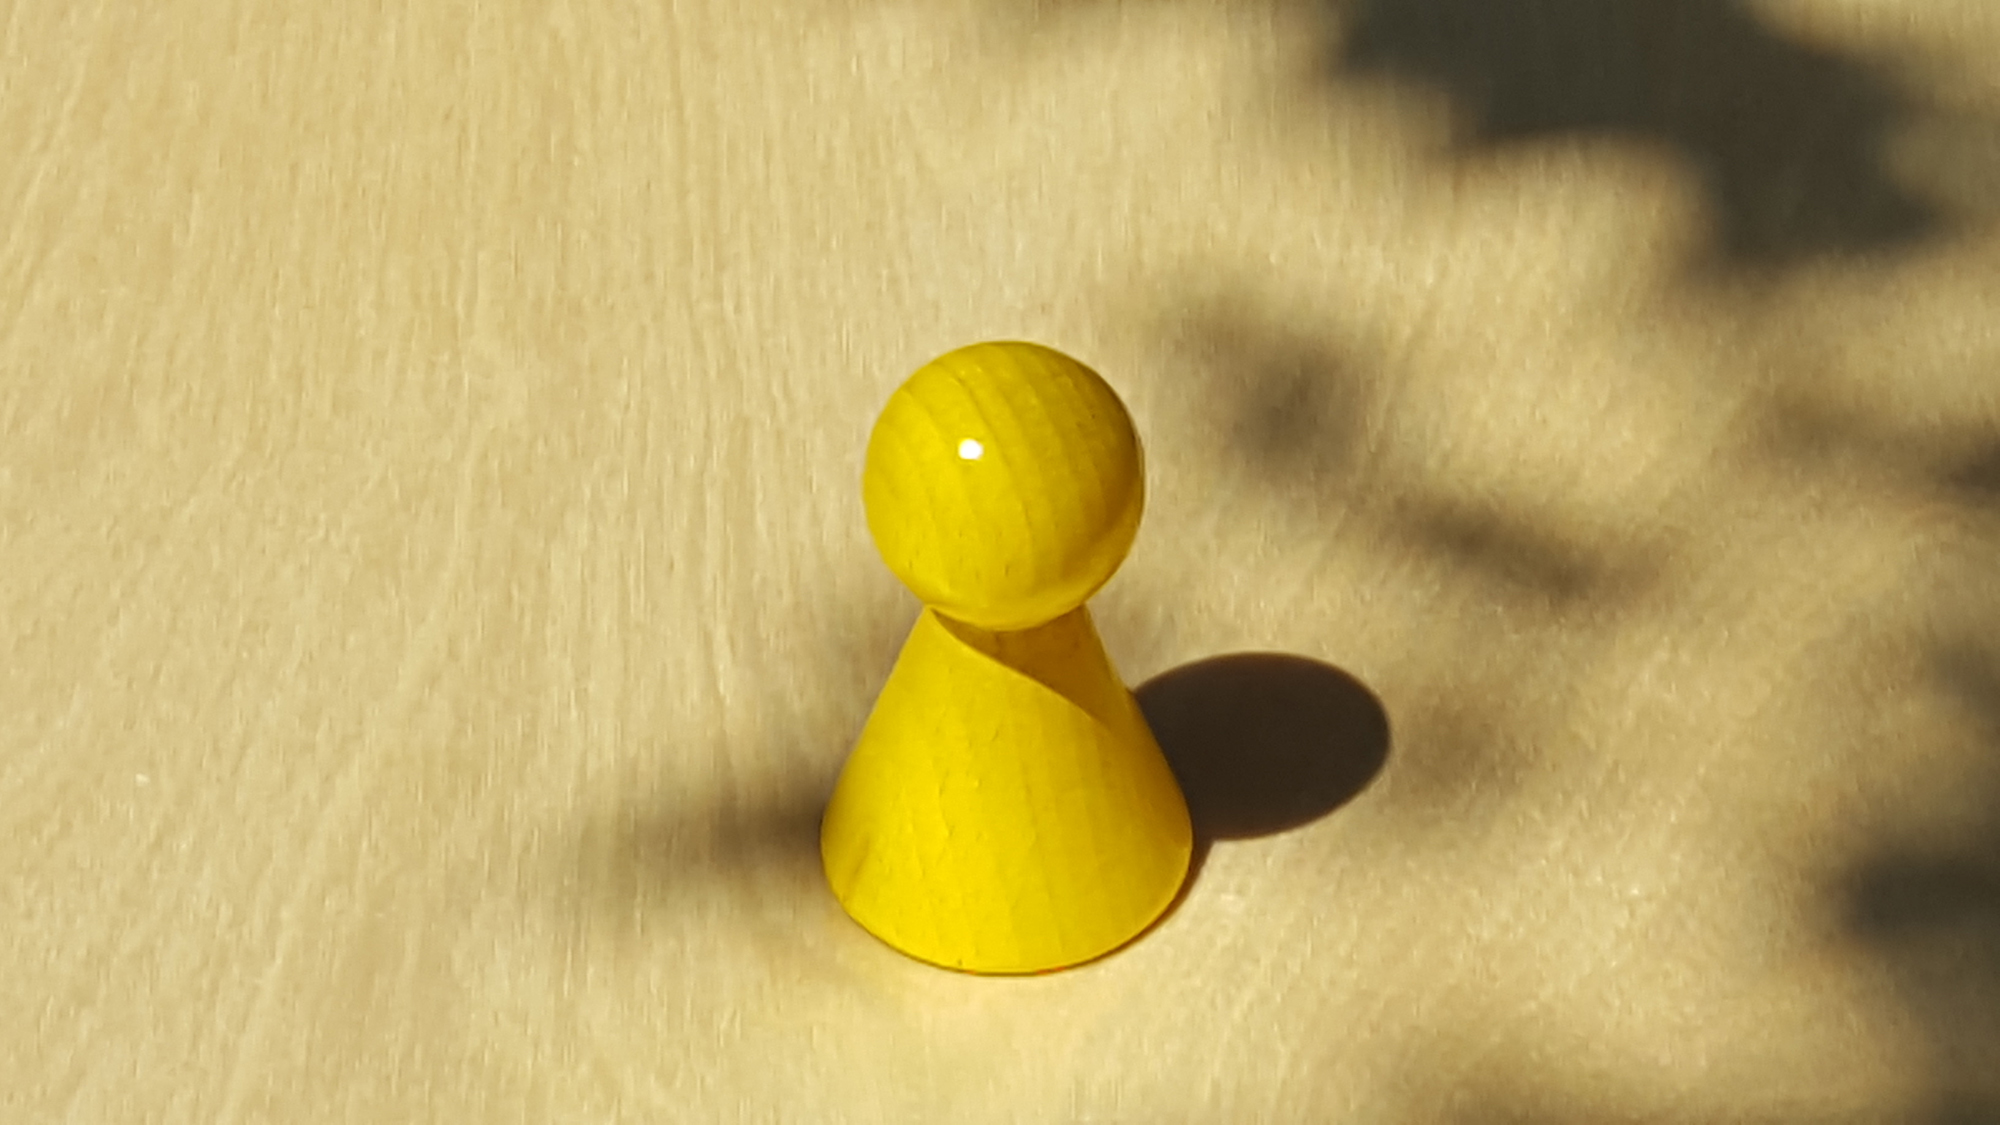 www.systembrett.at · Systembrett-Artikel · Einzel-Figur 7 cm in gelb (ohne Augen);